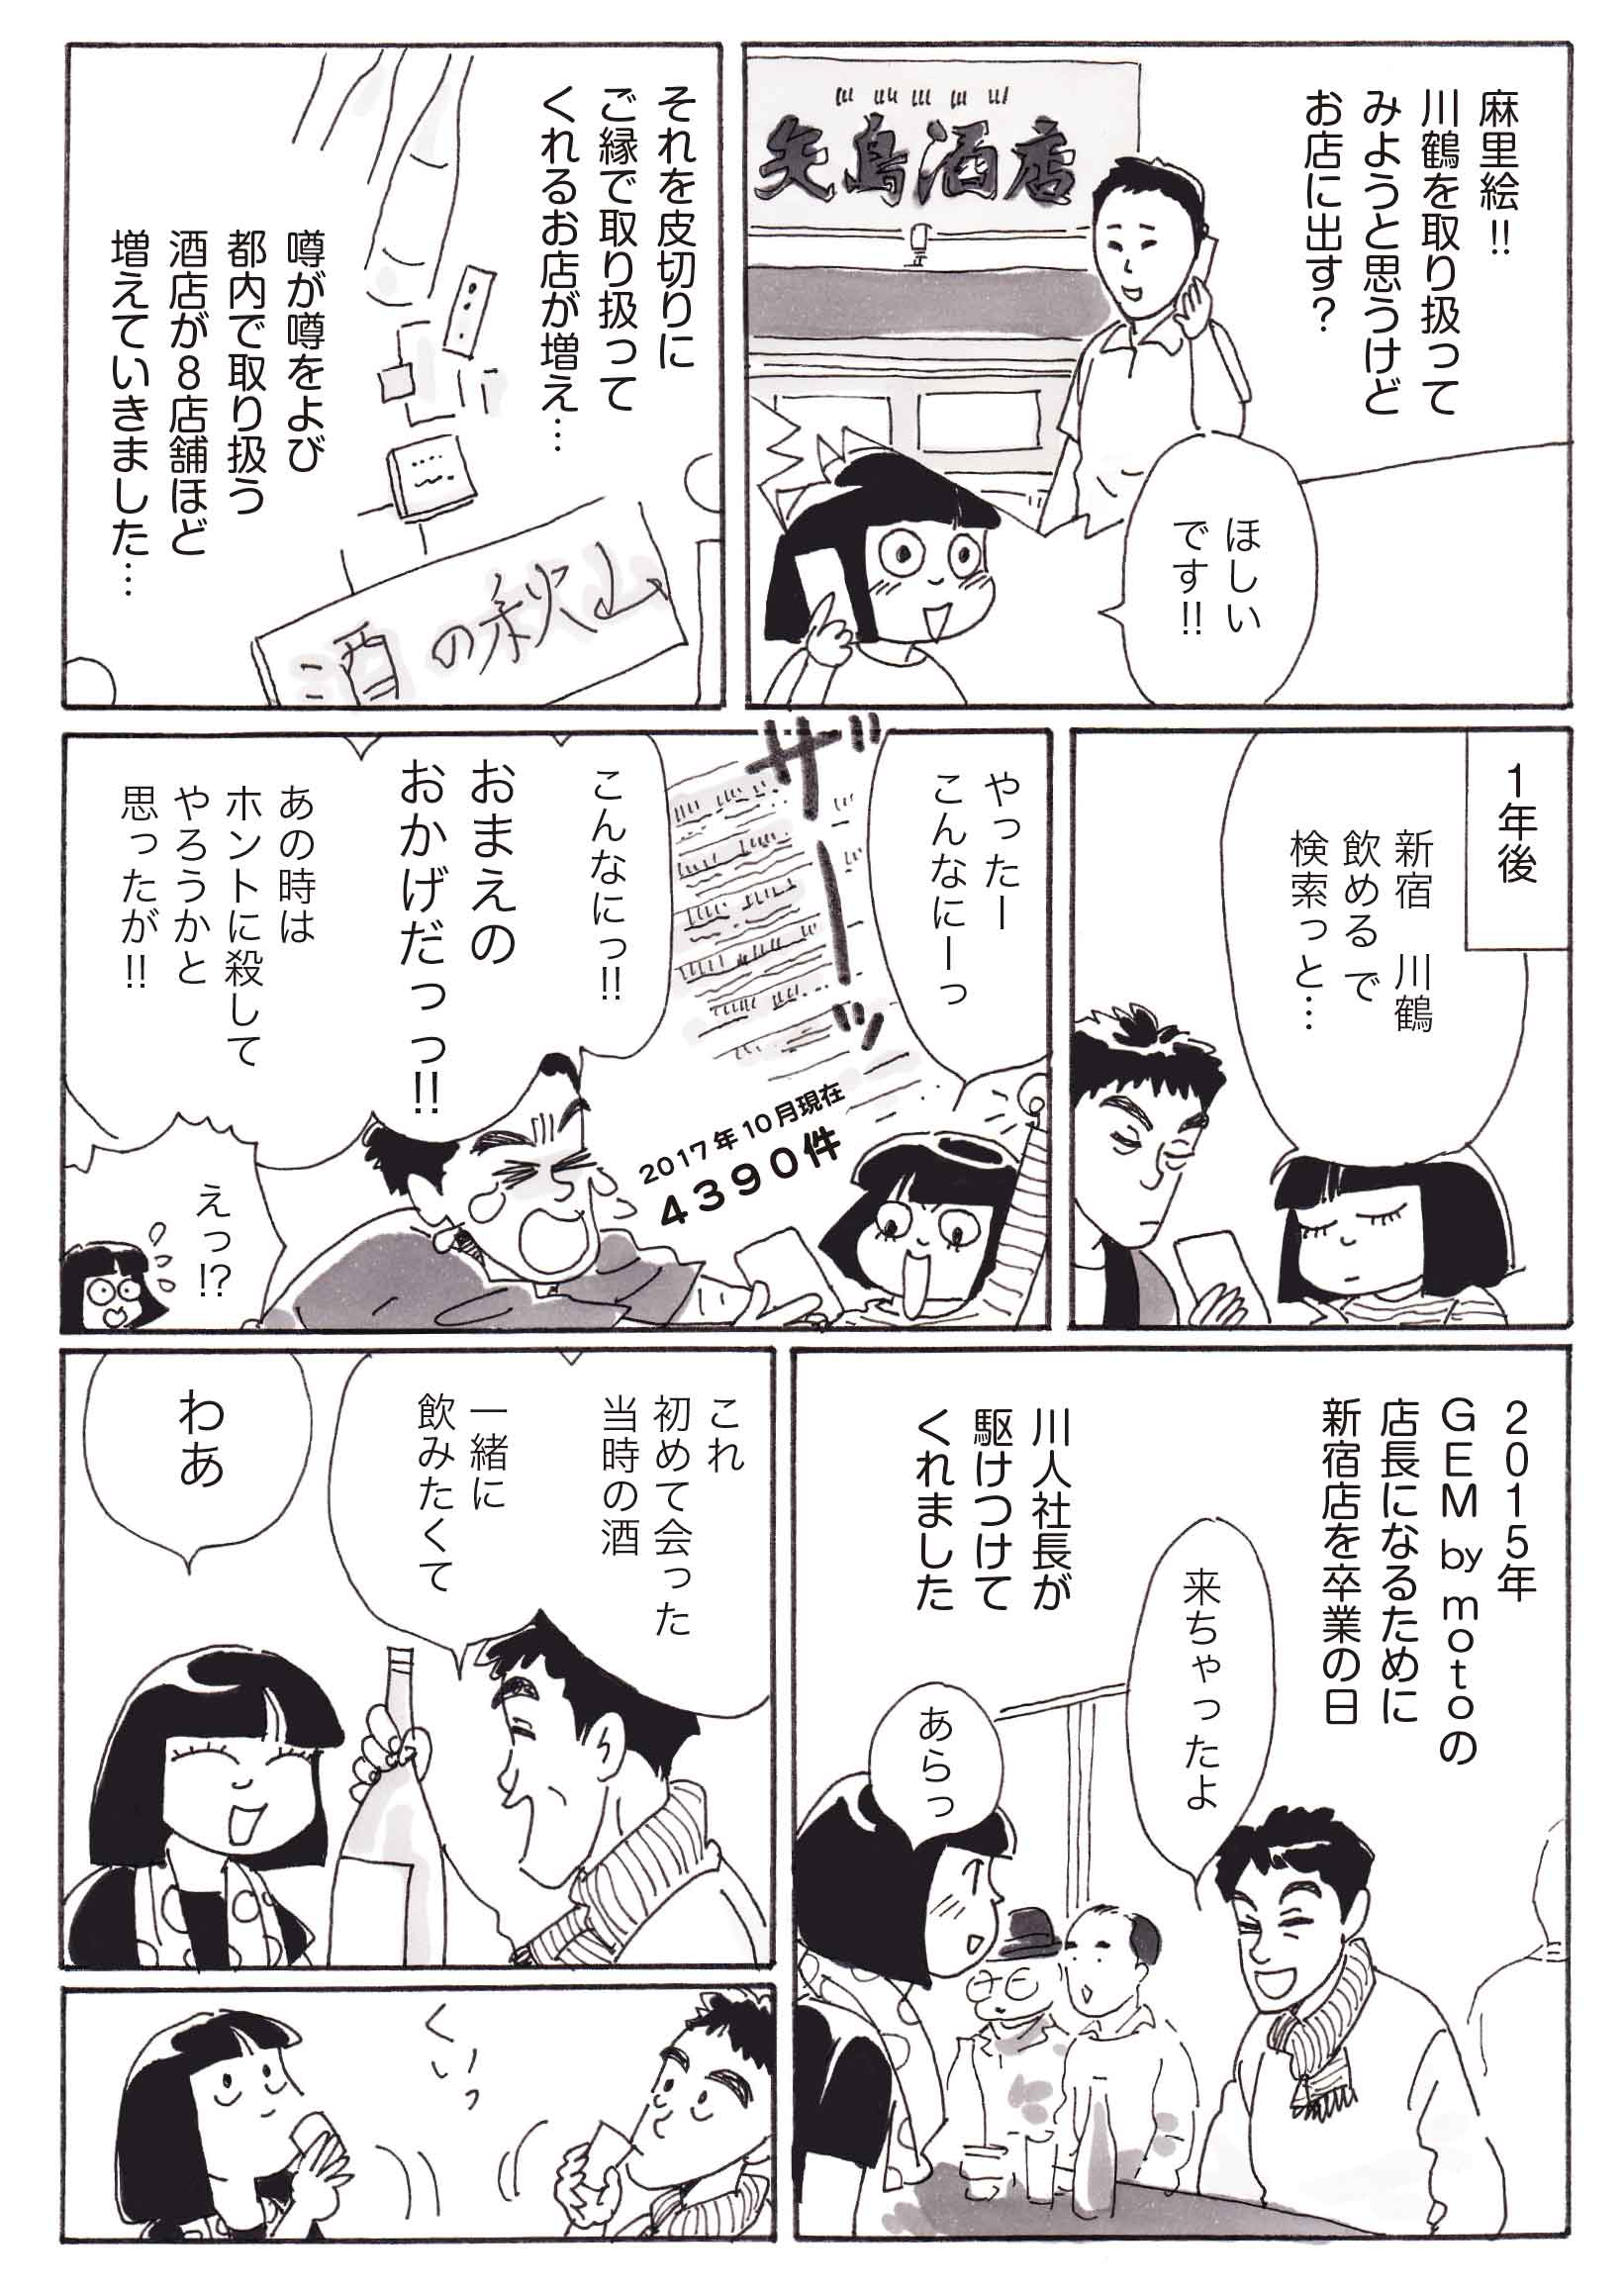 日本酒に恋して 巻き込まれた人 無料で読める漫画 ４コマサイト パチクリ